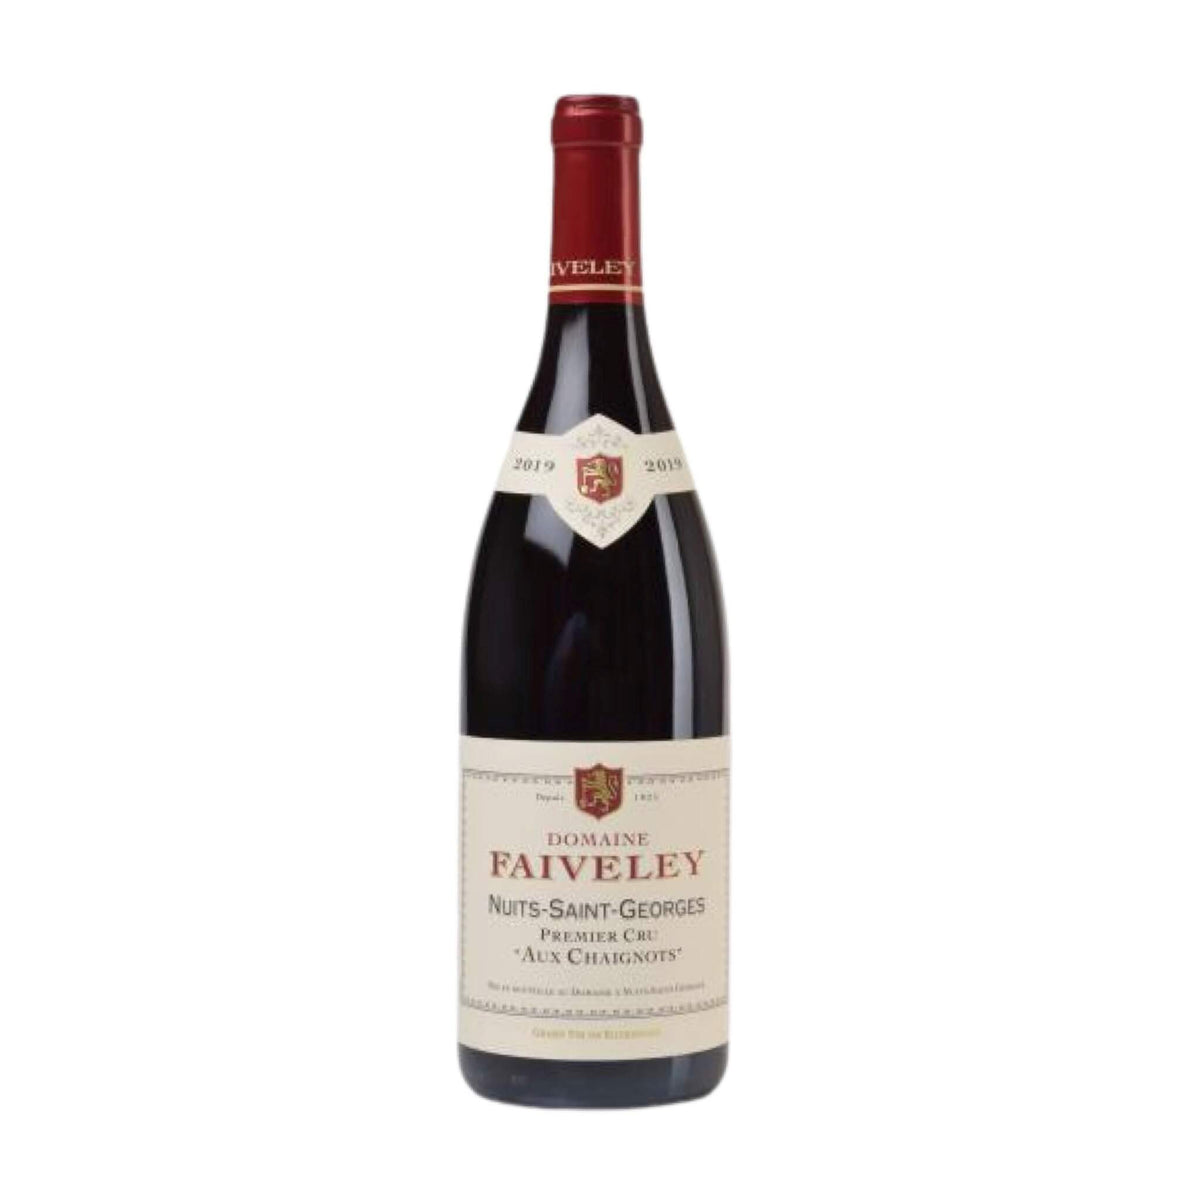 Domaine Faiveley-Rotwein-Pinot Noir-2019 Nuits-Saint-Georges 1er Cru Aux Chaignots-WINECOM